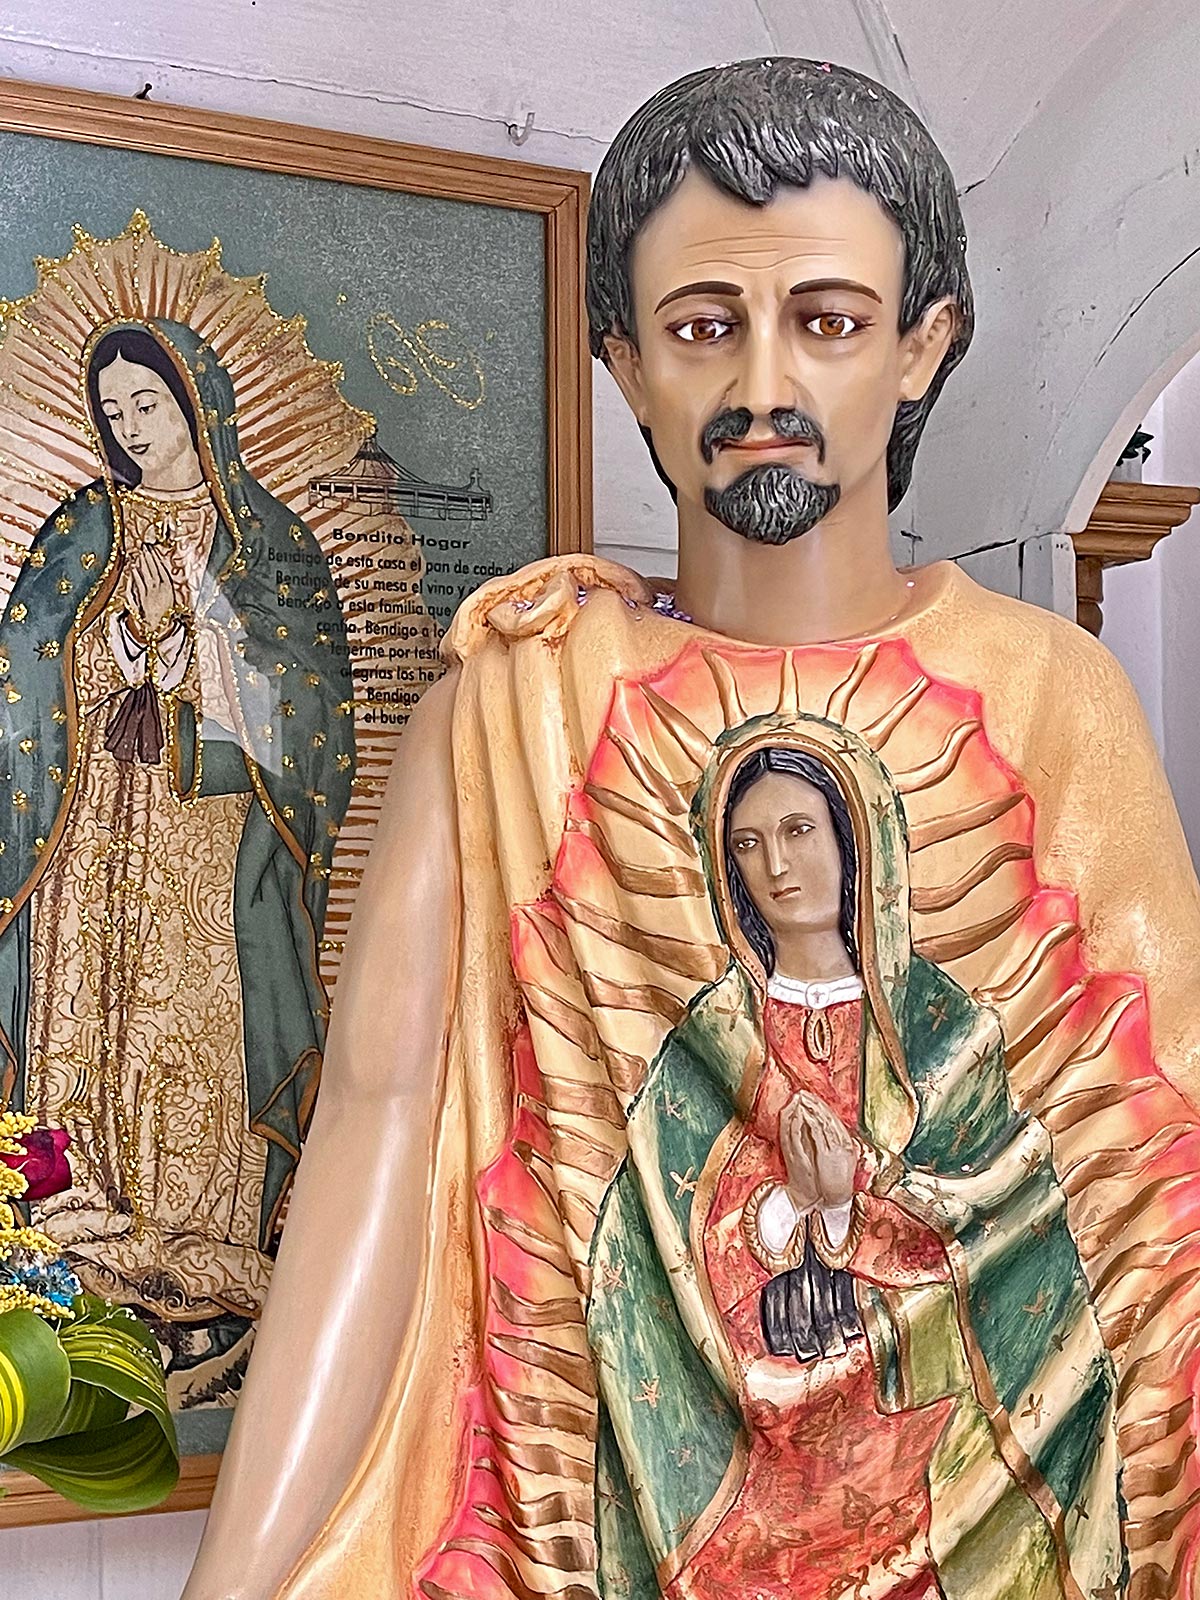 Standbeeld van Juan Diego met wonderbaarlijke afbeelding van Maria bedrukt op zijn stoffen mantel, kerk van Guadalupe, San Cristobal